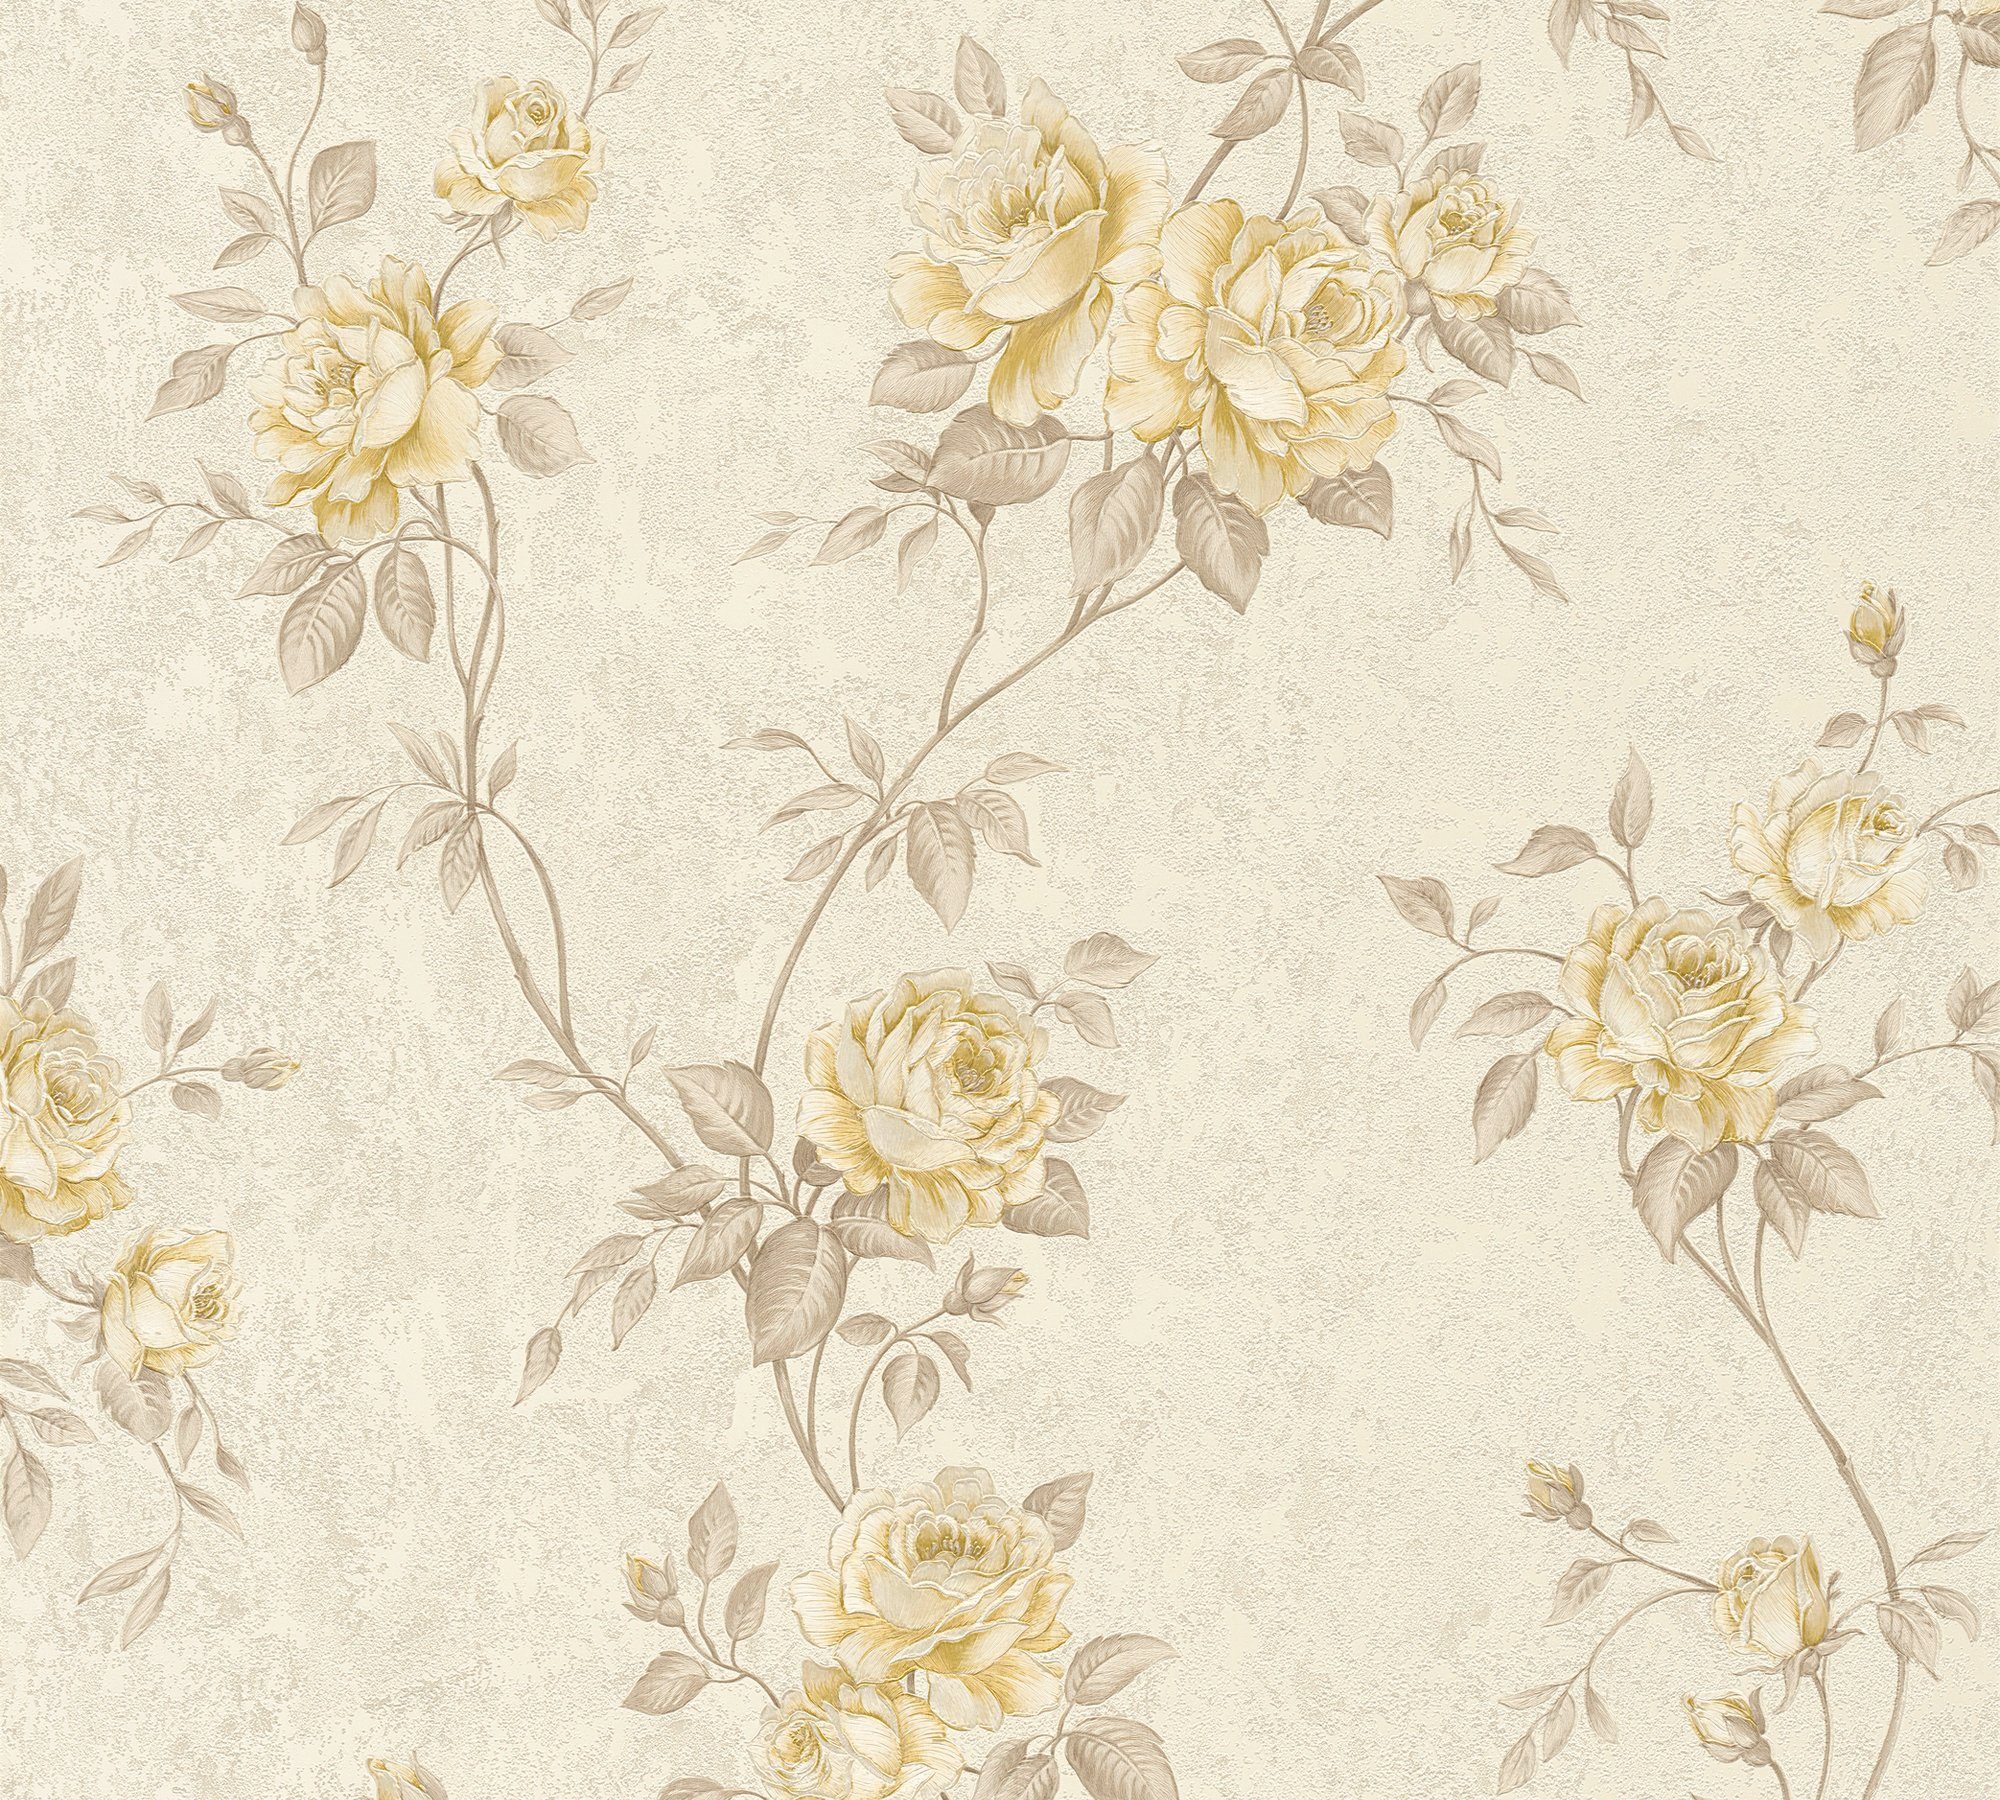 A.S. Création Vliestapete Romantico romantisch floral, floral, Barock Tapete creme/beige Blumen